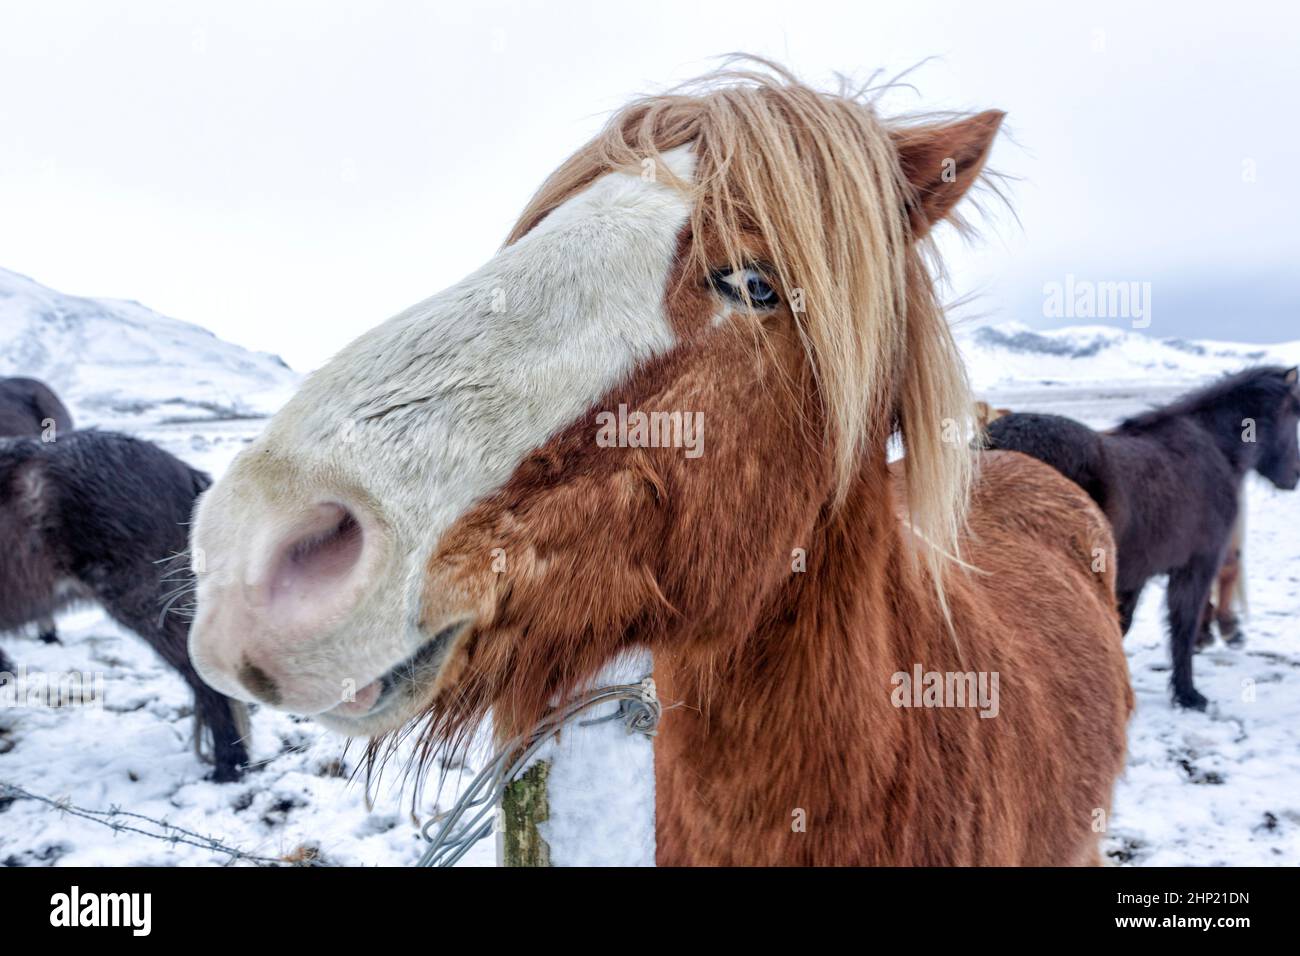 Isländisches Pferd, eine kleine, manchmal ponygroße Pferderasse. Entwickelt aus Ponys, die von nordischen Siedlern im 9th. Und 10th. Jahrhundert nach Island gebracht wurden, Stockfoto